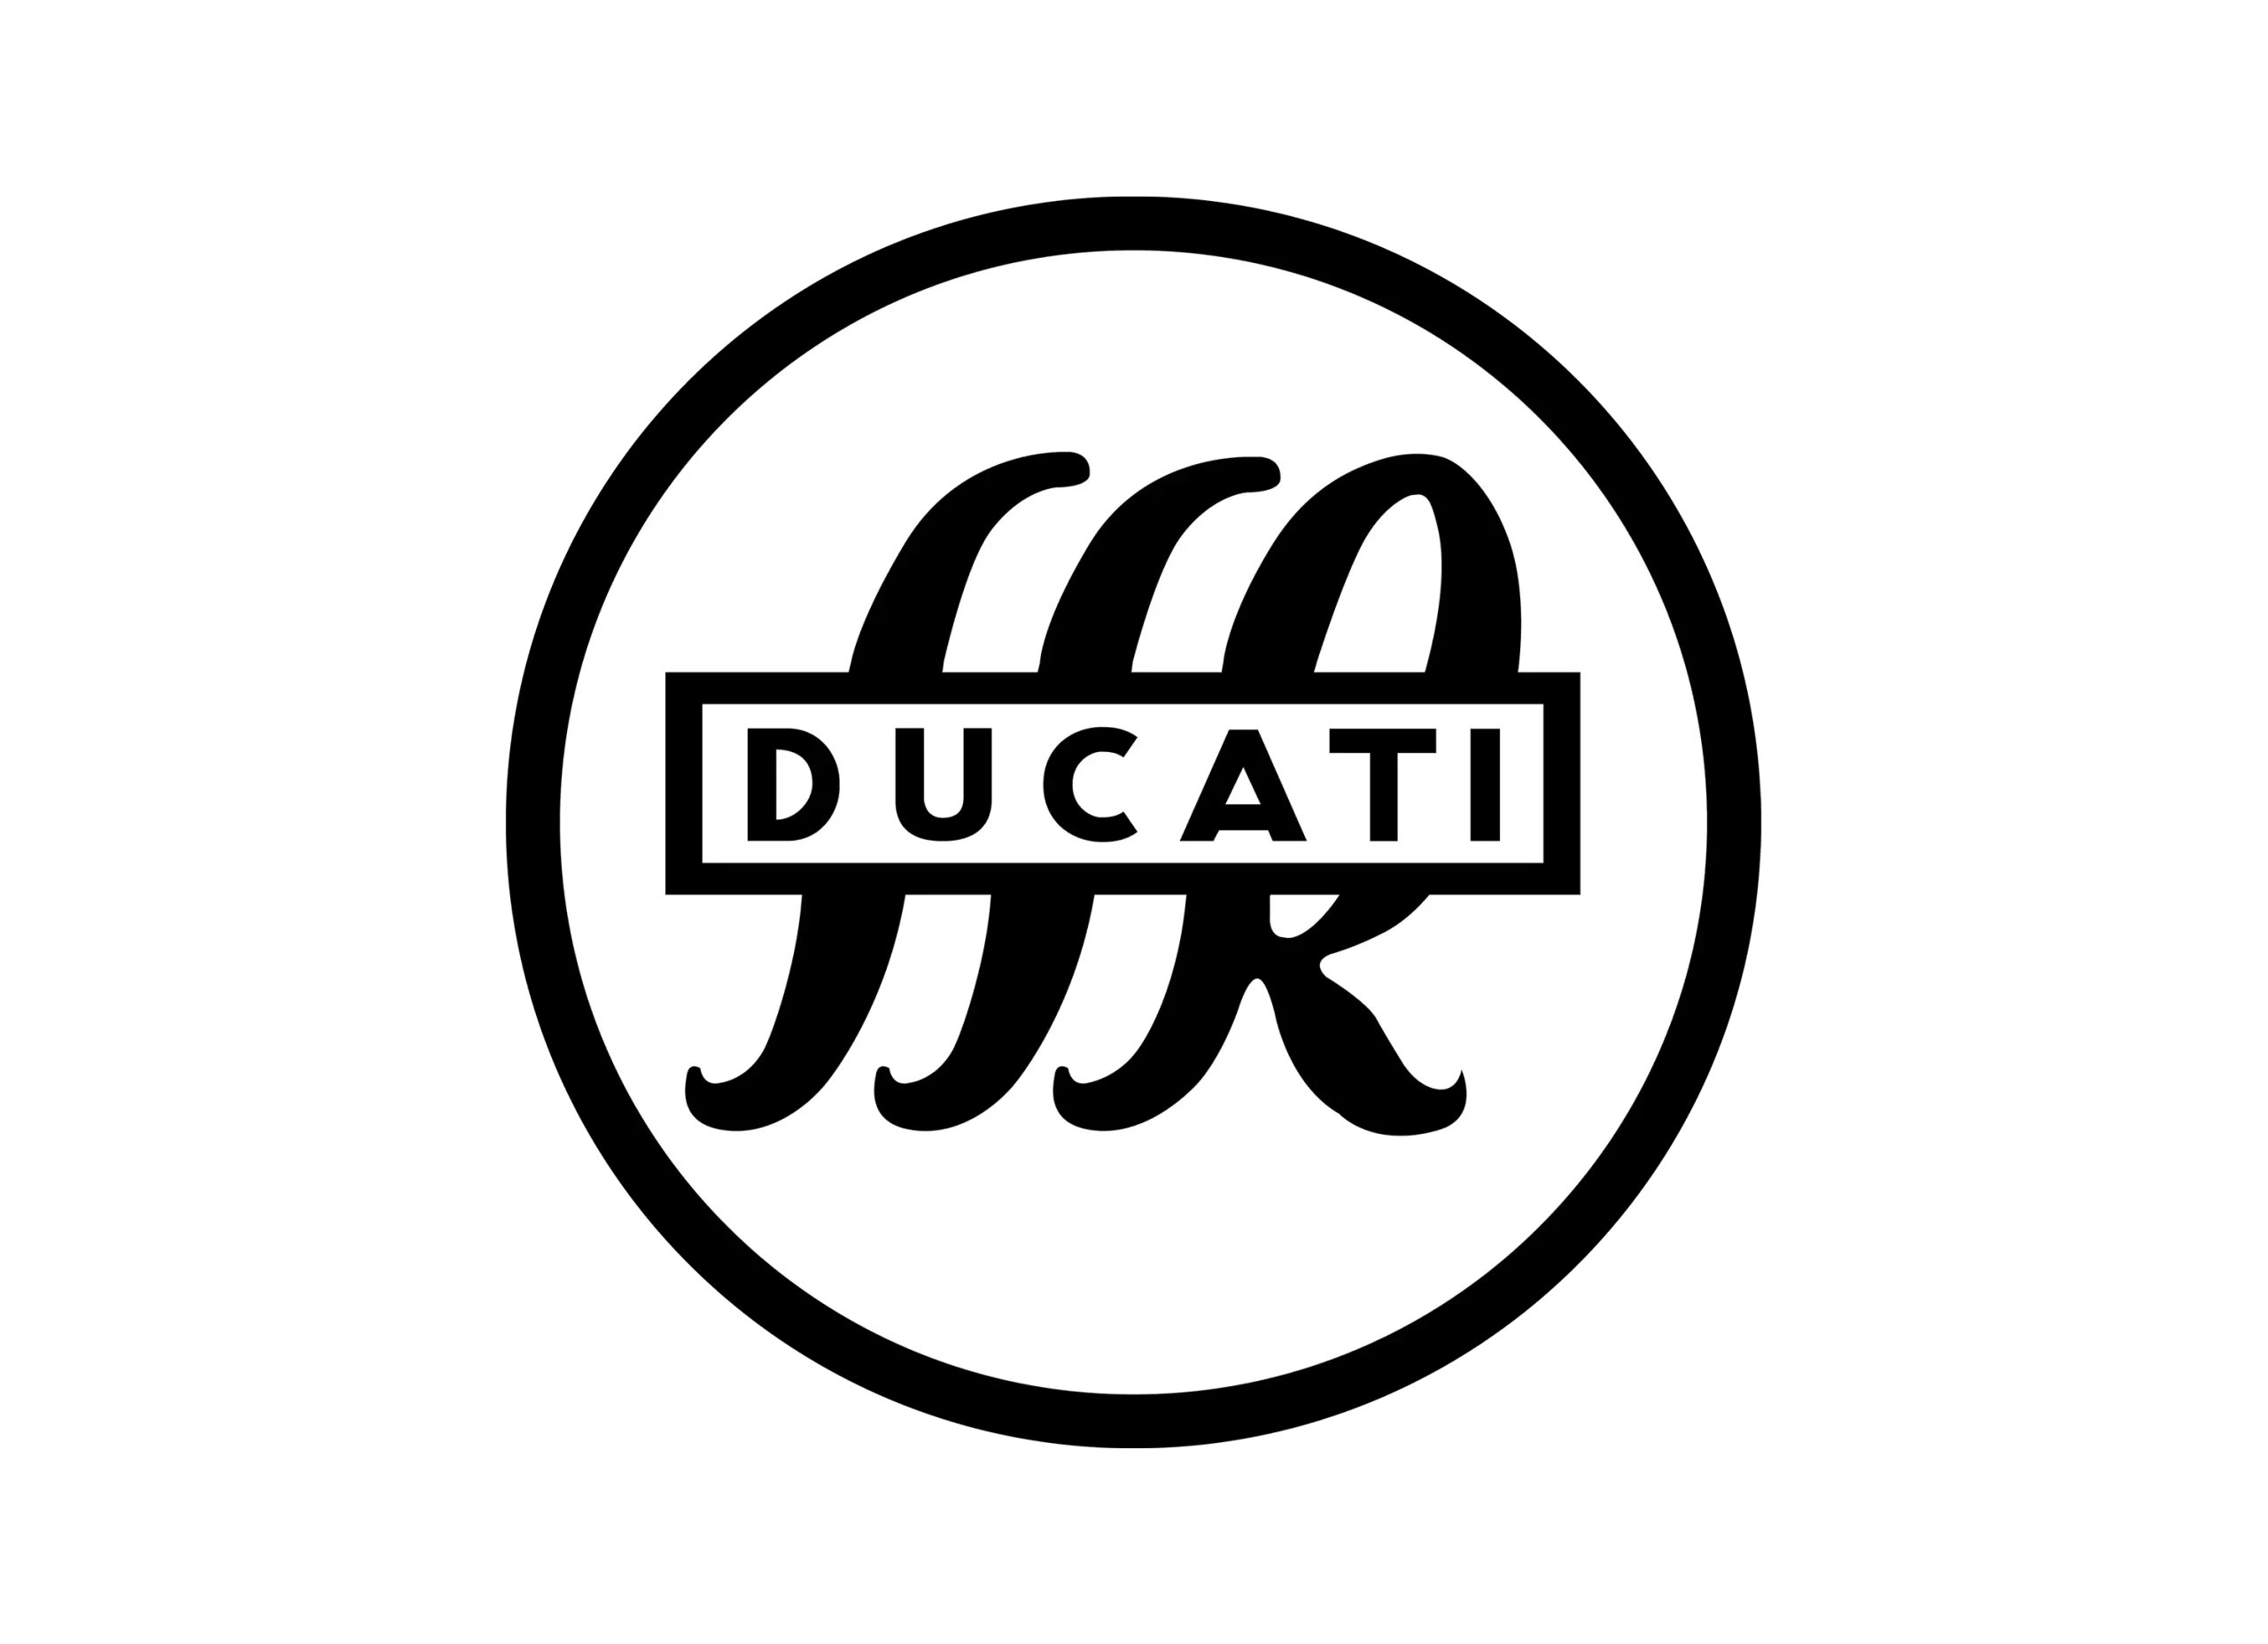 Ducati logo 1935-1949